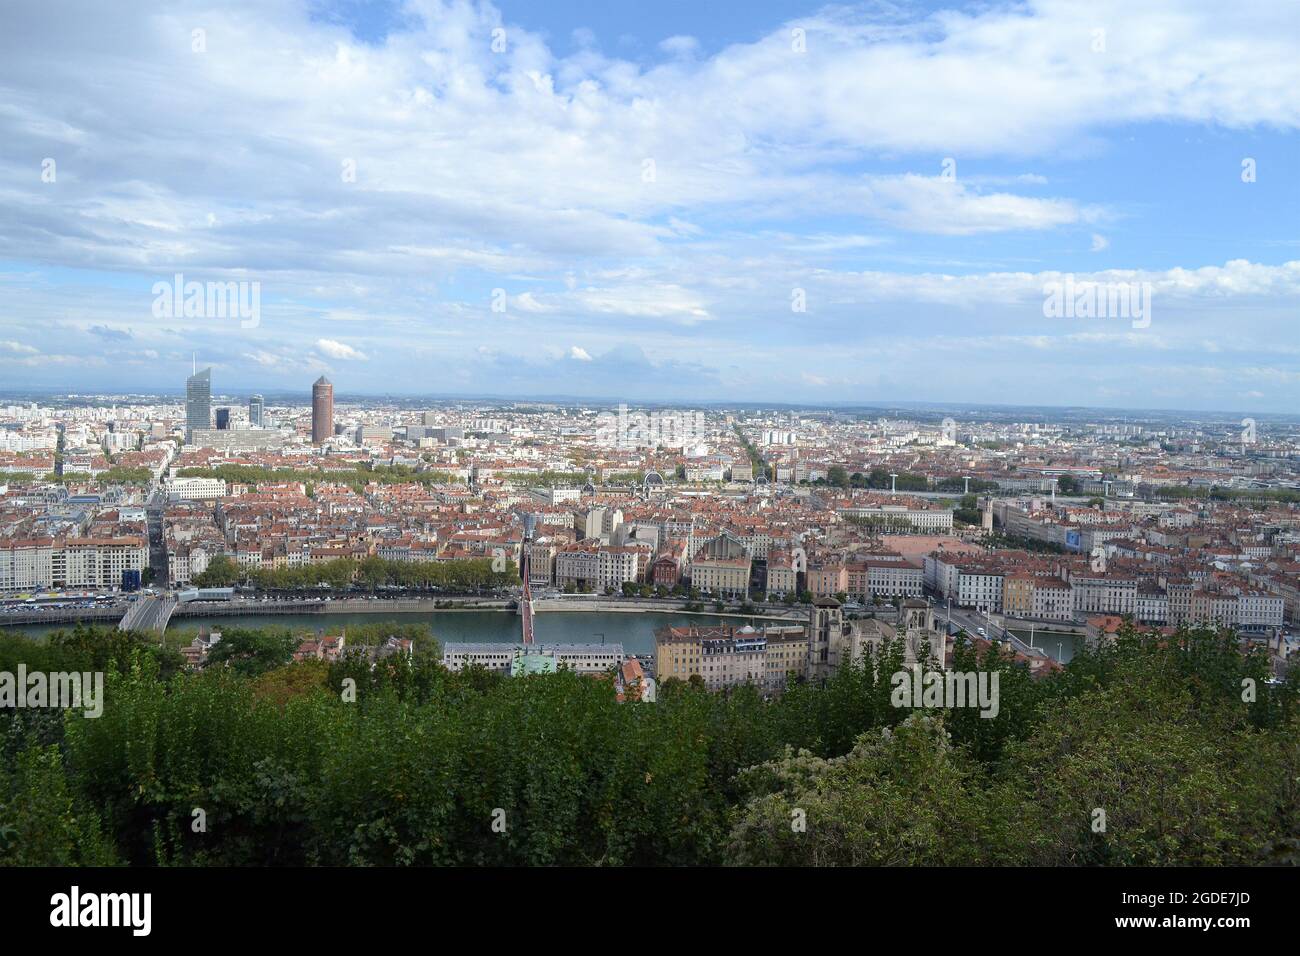 Ville de Lyon en France, vue sur les tours de la Partdieu et sur la Place Bellecour depuis la cathédrale de Fourvière Foto Stock